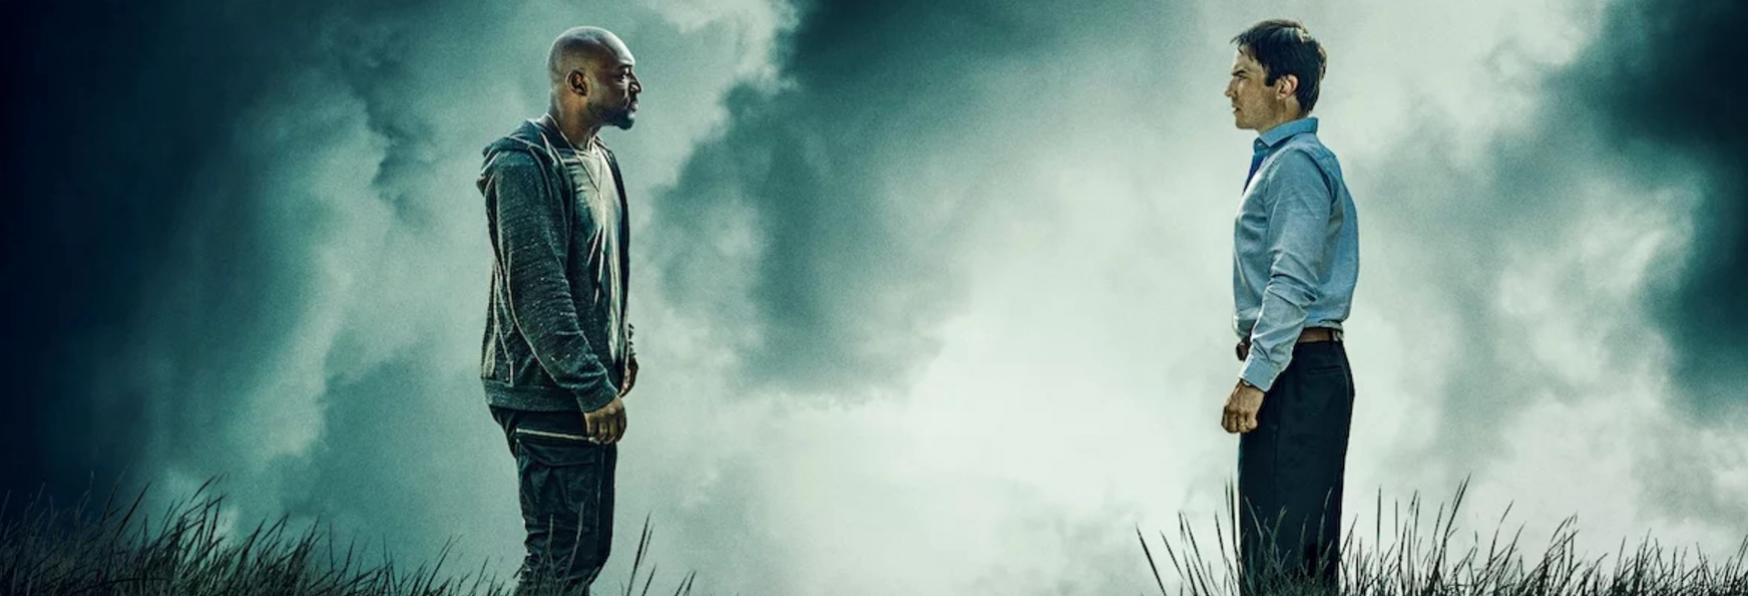 V Wars: la Recensione della nuova Serie TV con Ian Somerhalder, prodotta da Netflix